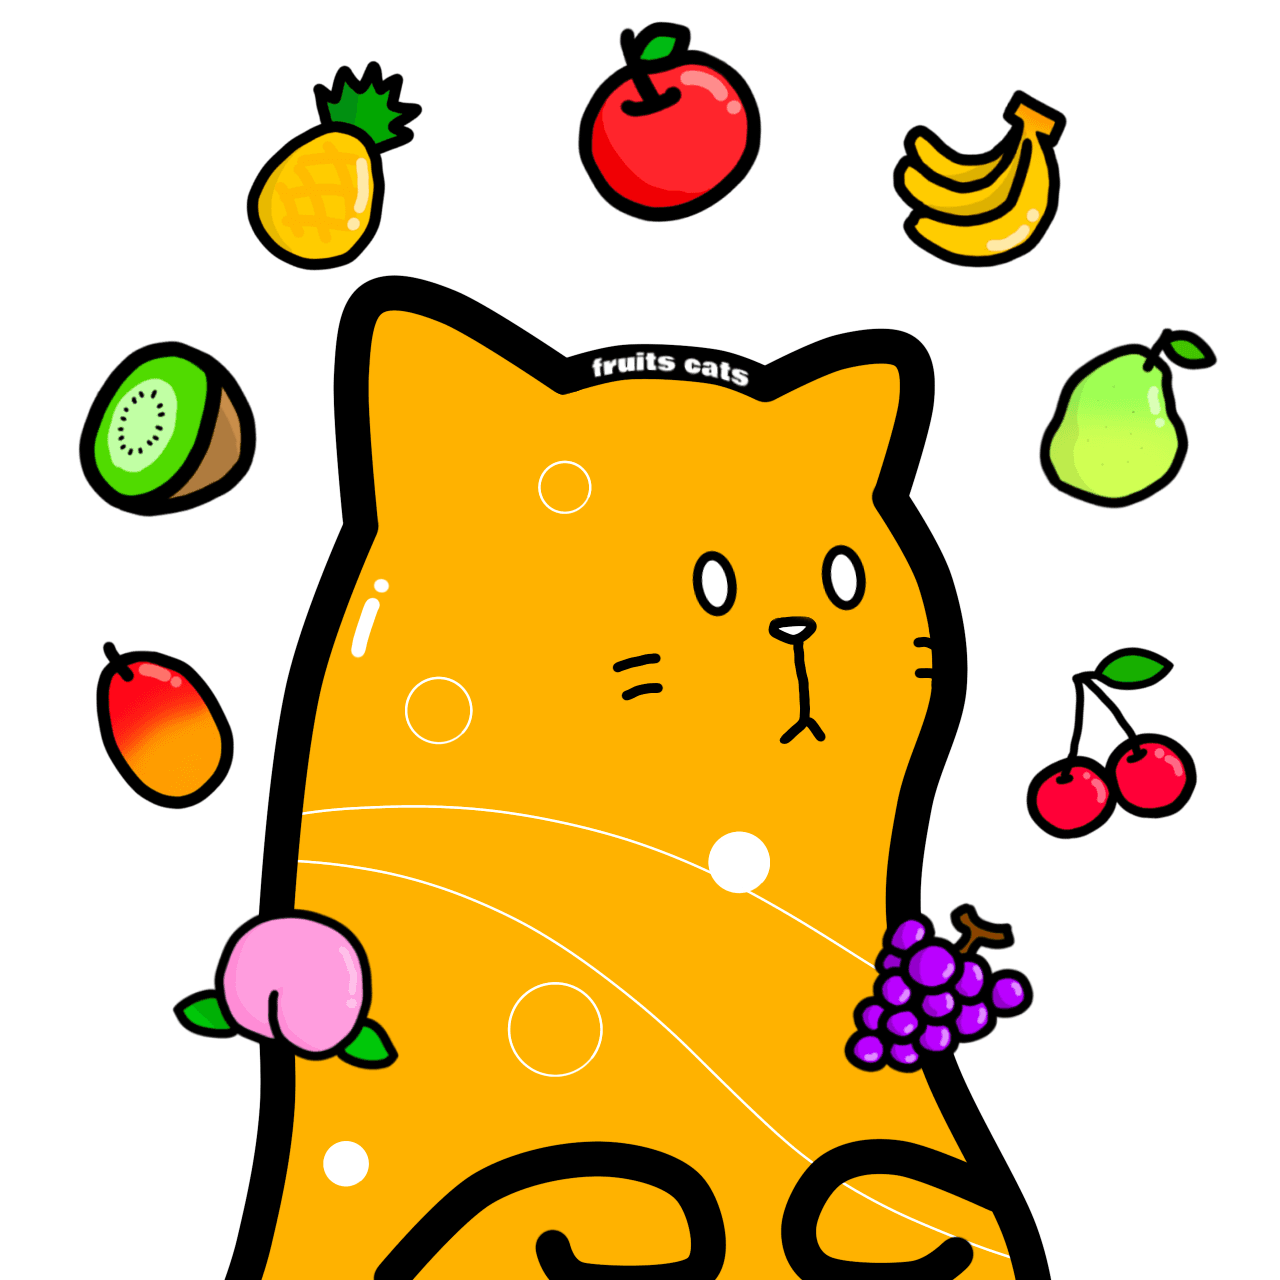 fruits cats